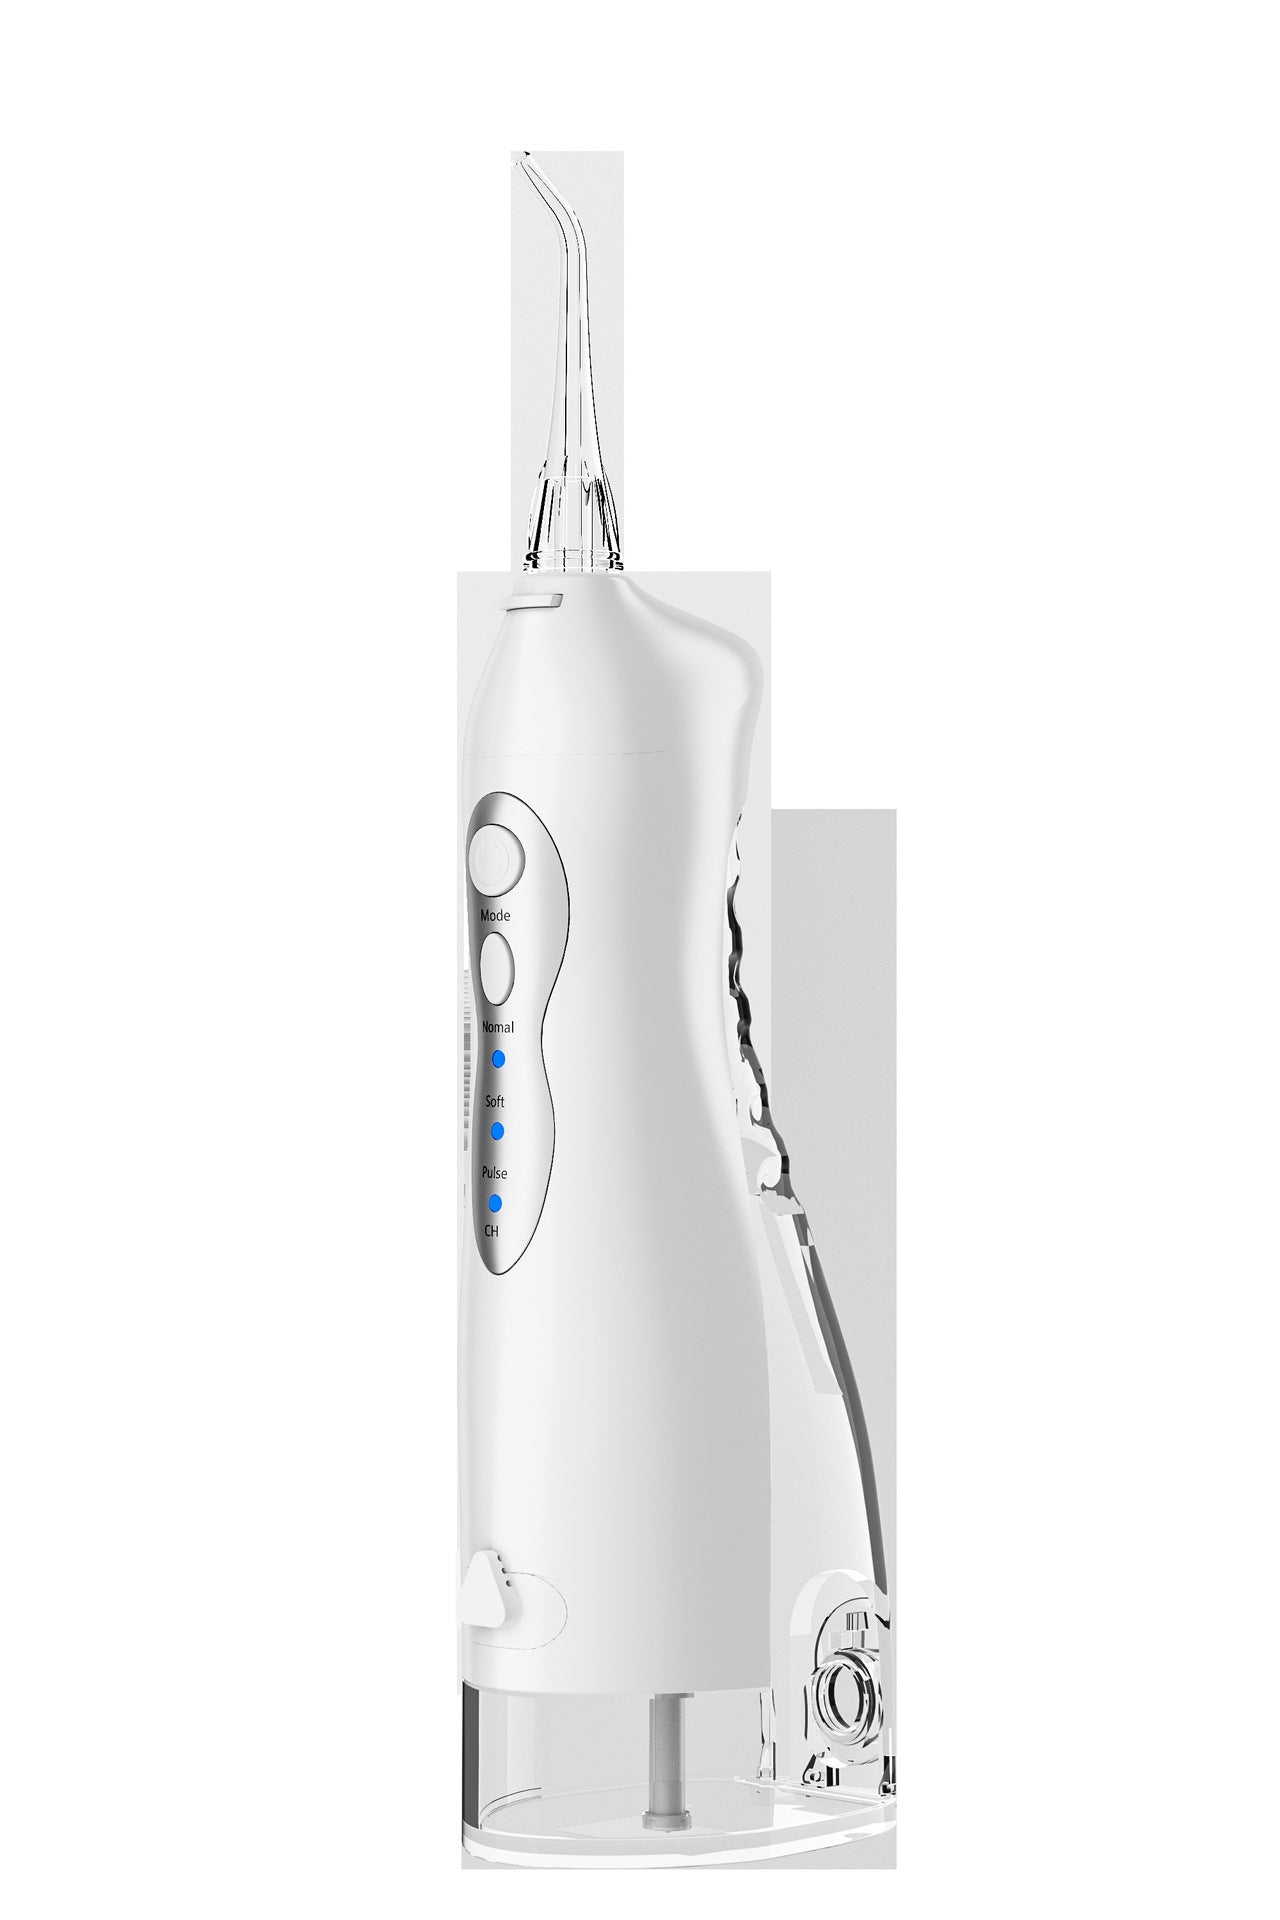 Portable Dental Flusher, Dental Flosser, Electric Oral Cleaner, Portable